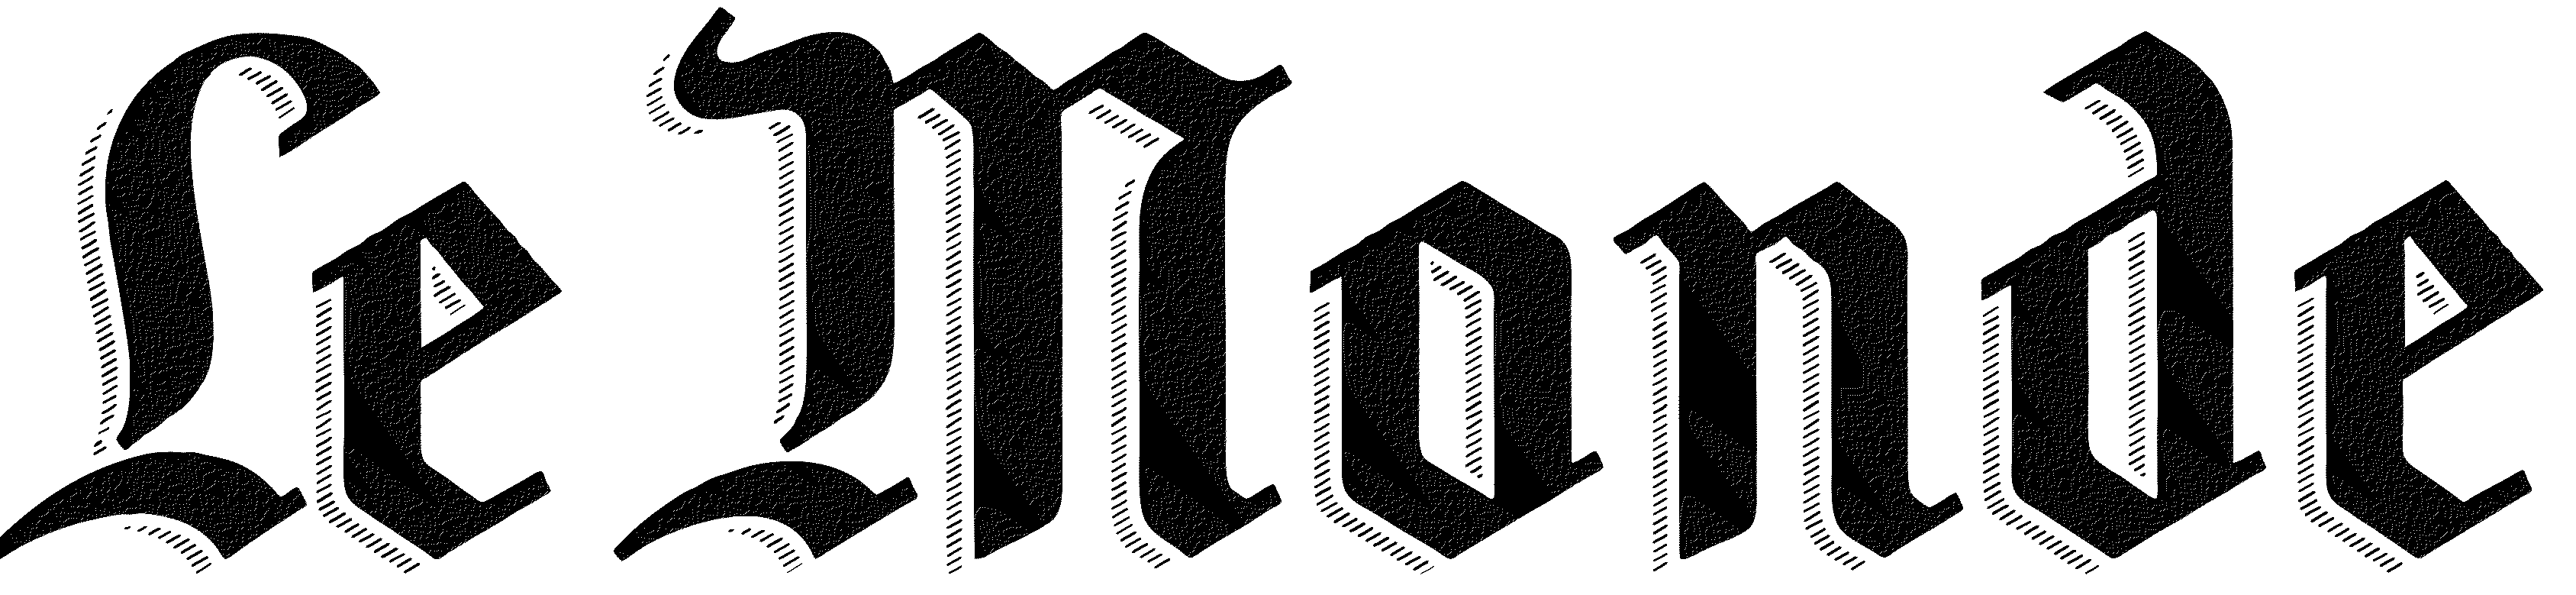 Le Monde Journal Logo